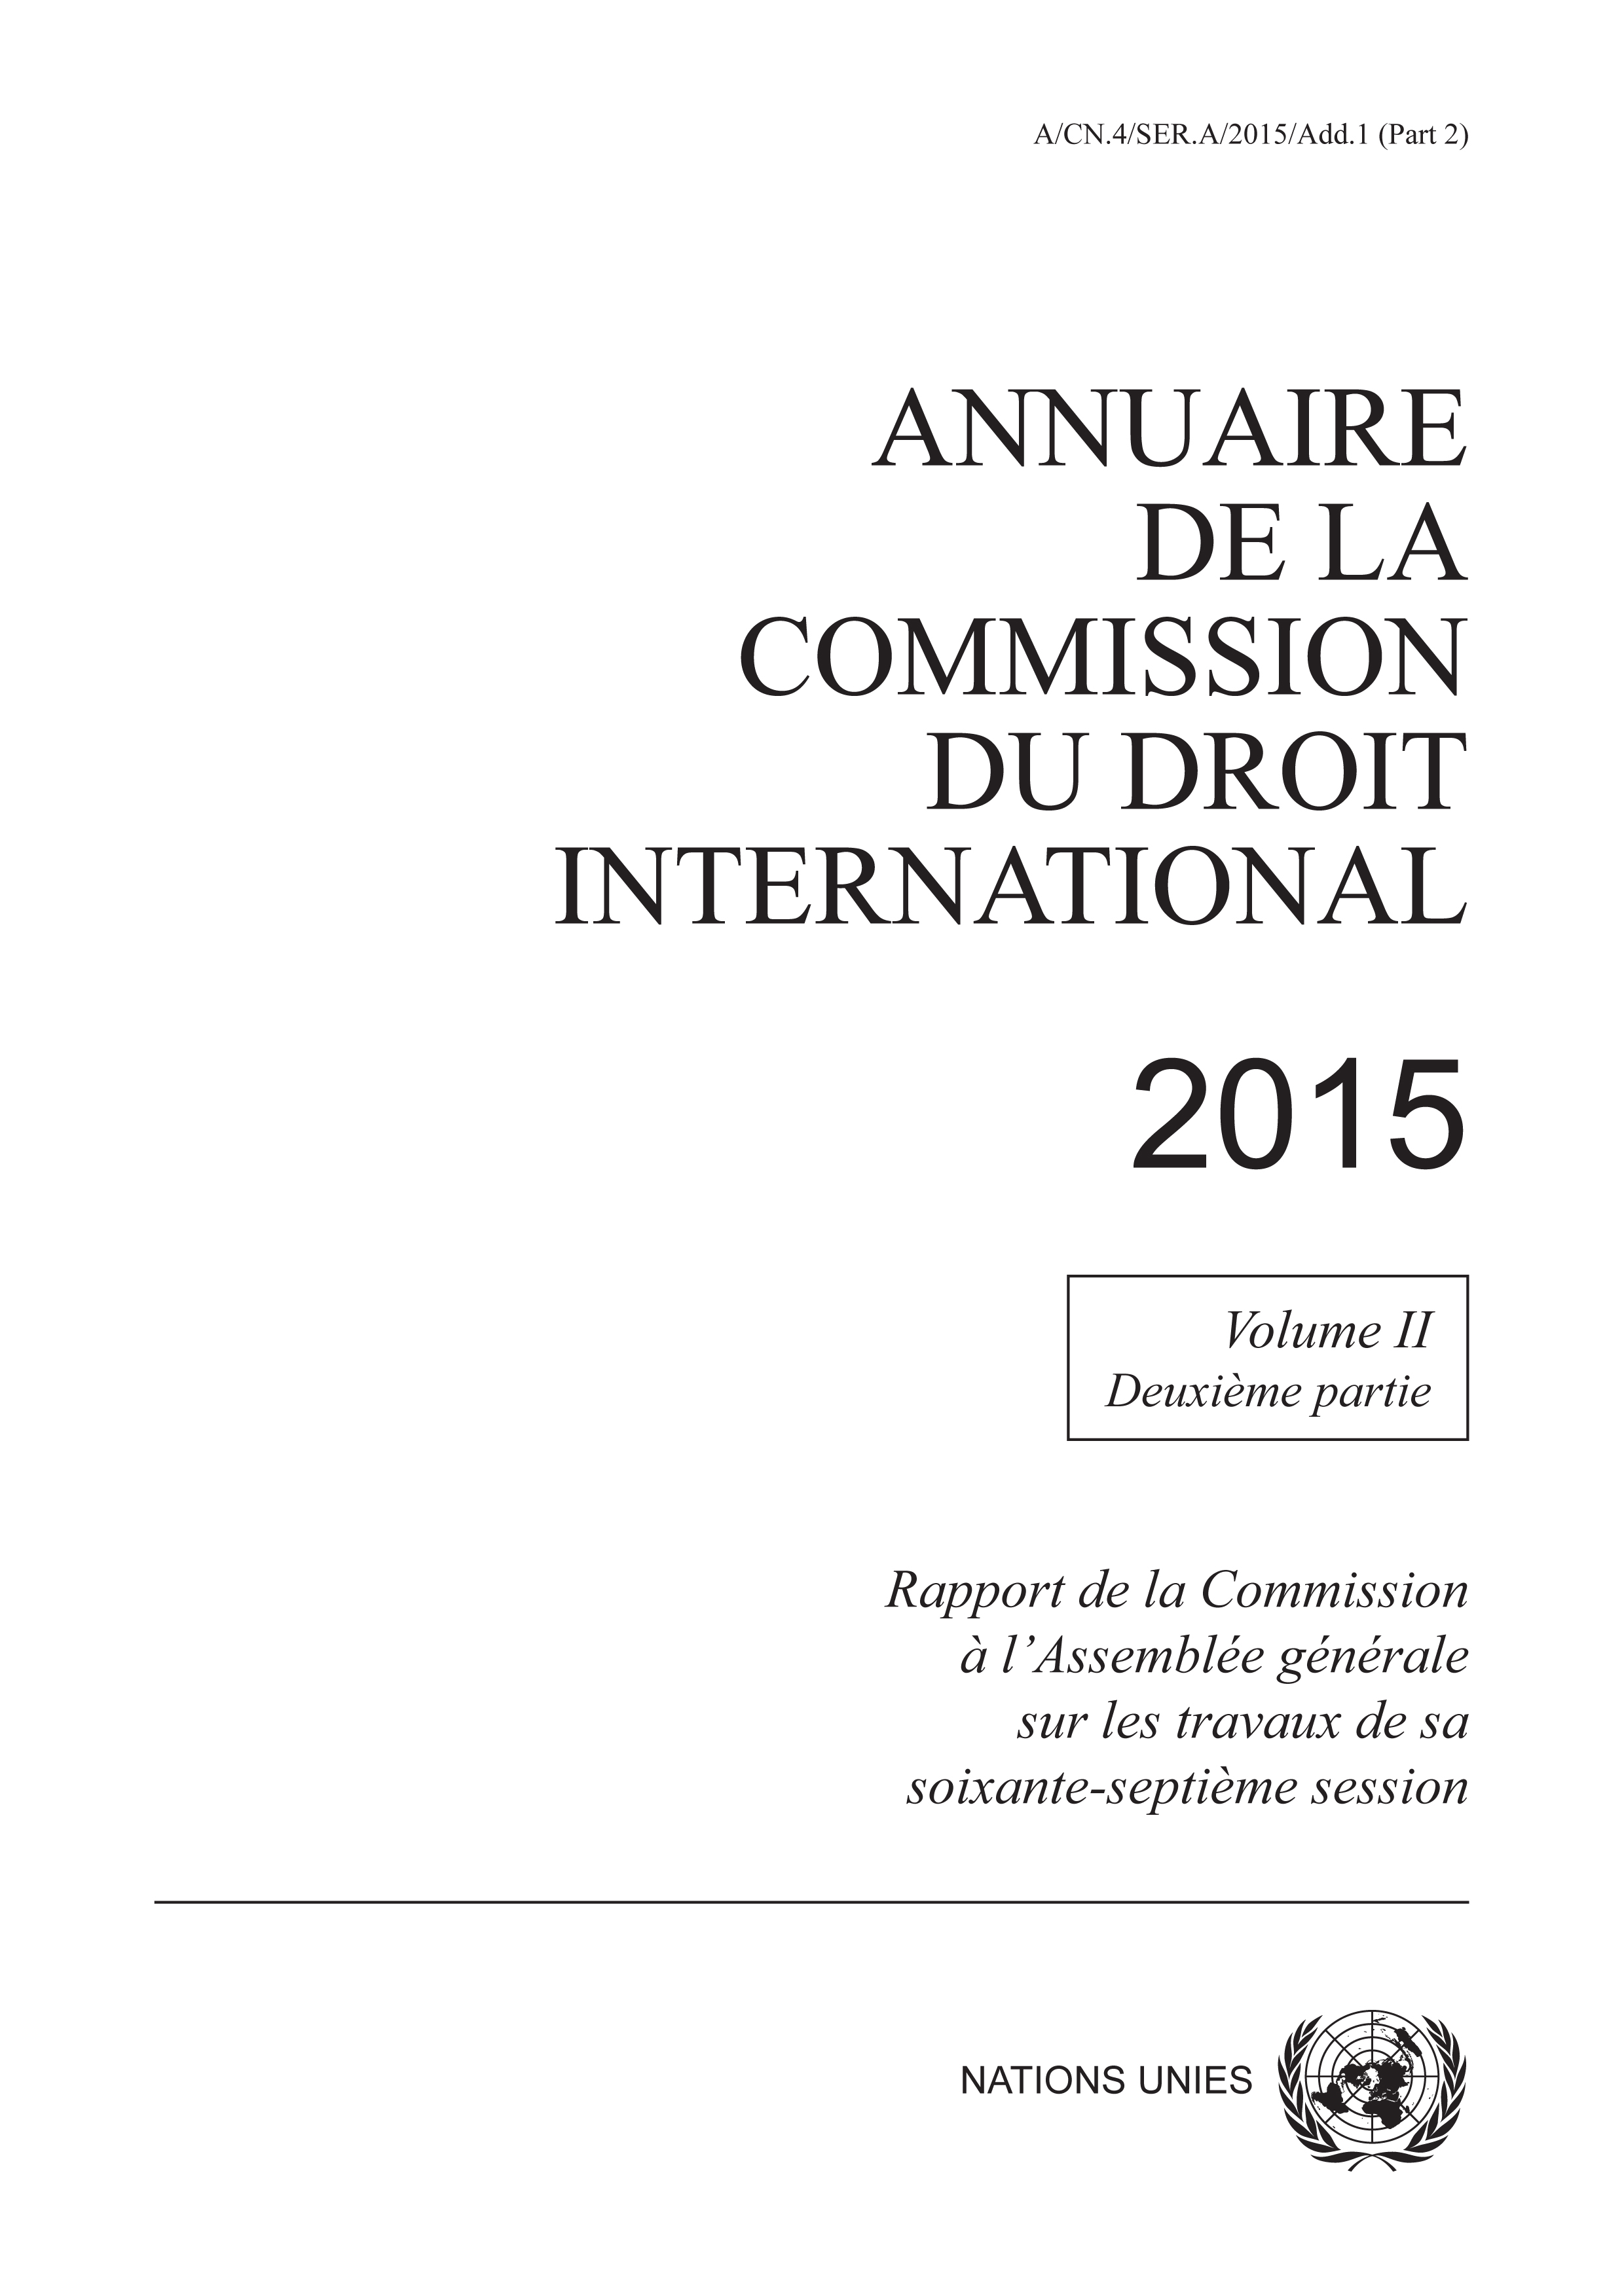 image of Annuaire de la Commission du Droit International 2015, Vol. II, Partie 2